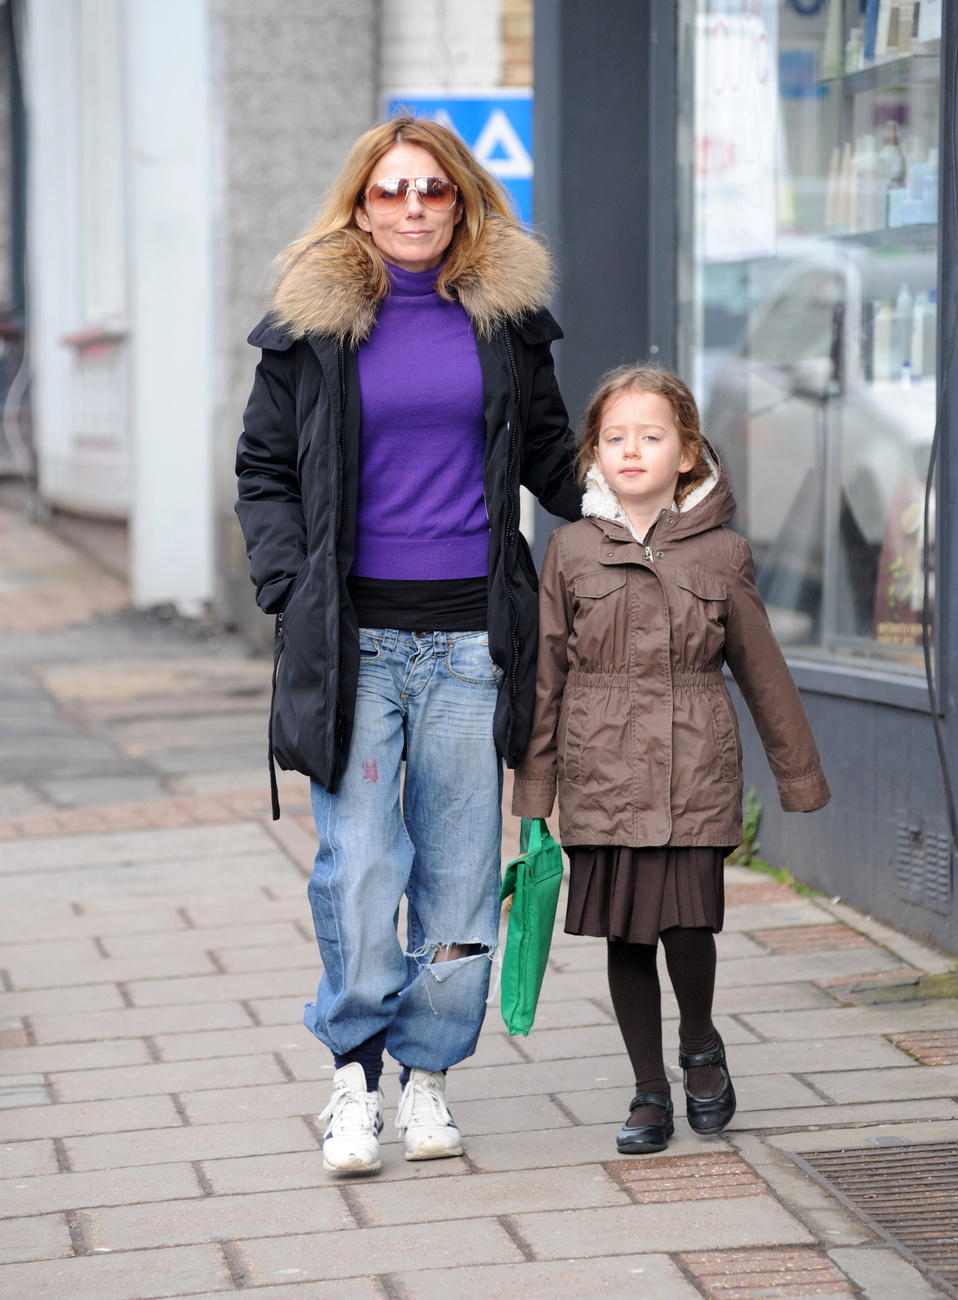 Marisa Tomei 49 évesen a fekete mini és egy színesebb bunda mellett döntött.